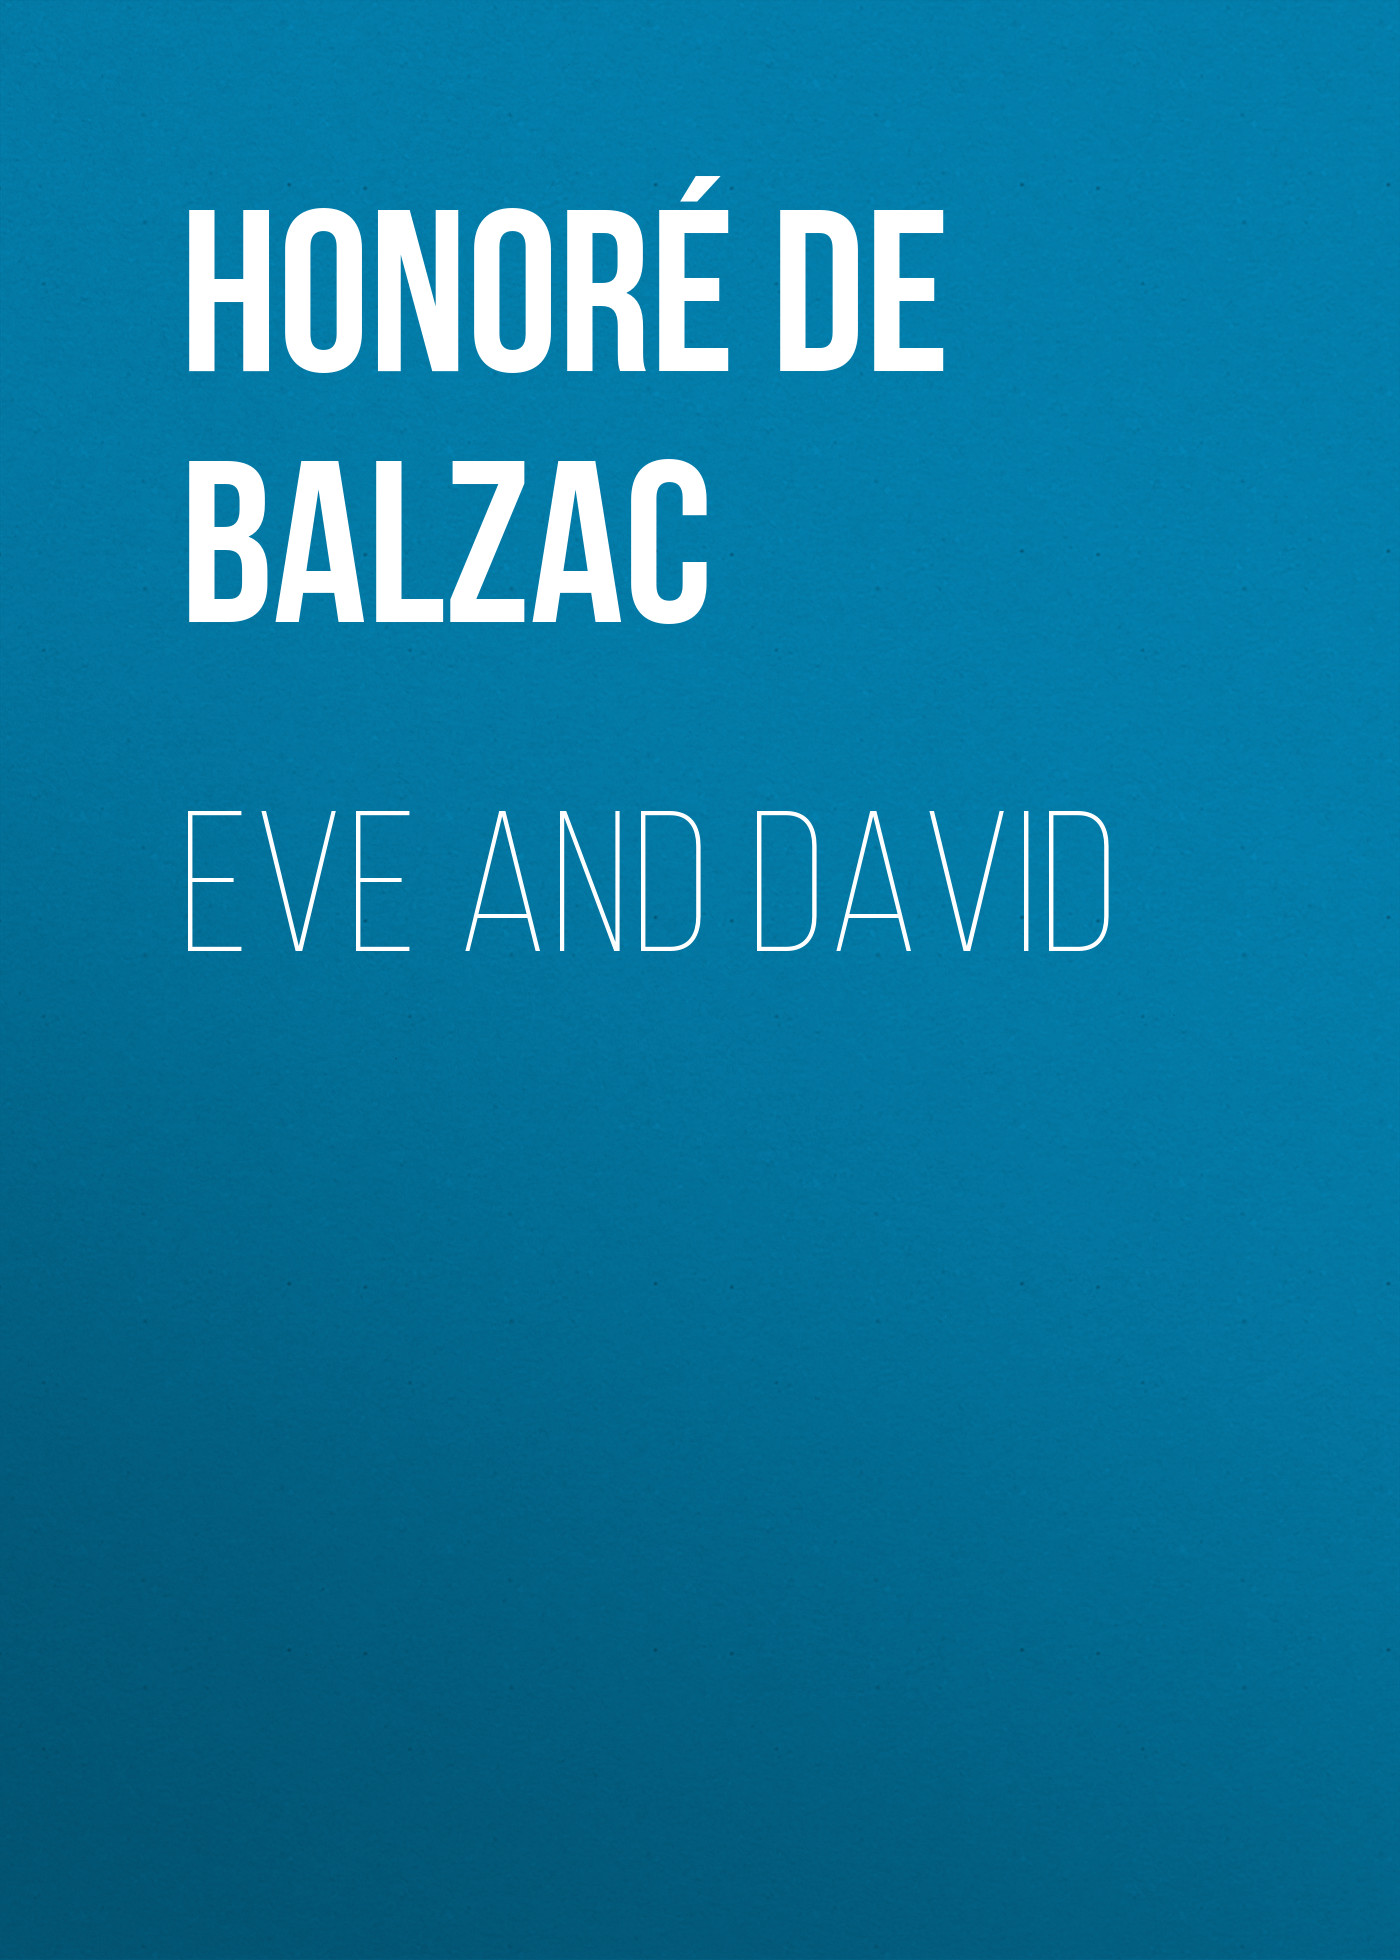 Книга Eve and David из серии , созданная Honoré Balzac, может относится к жанру Литература 19 века, Зарубежная старинная литература, Зарубежная классика. Стоимость электронной книги Eve and David с идентификатором 25020443 составляет 0 руб.